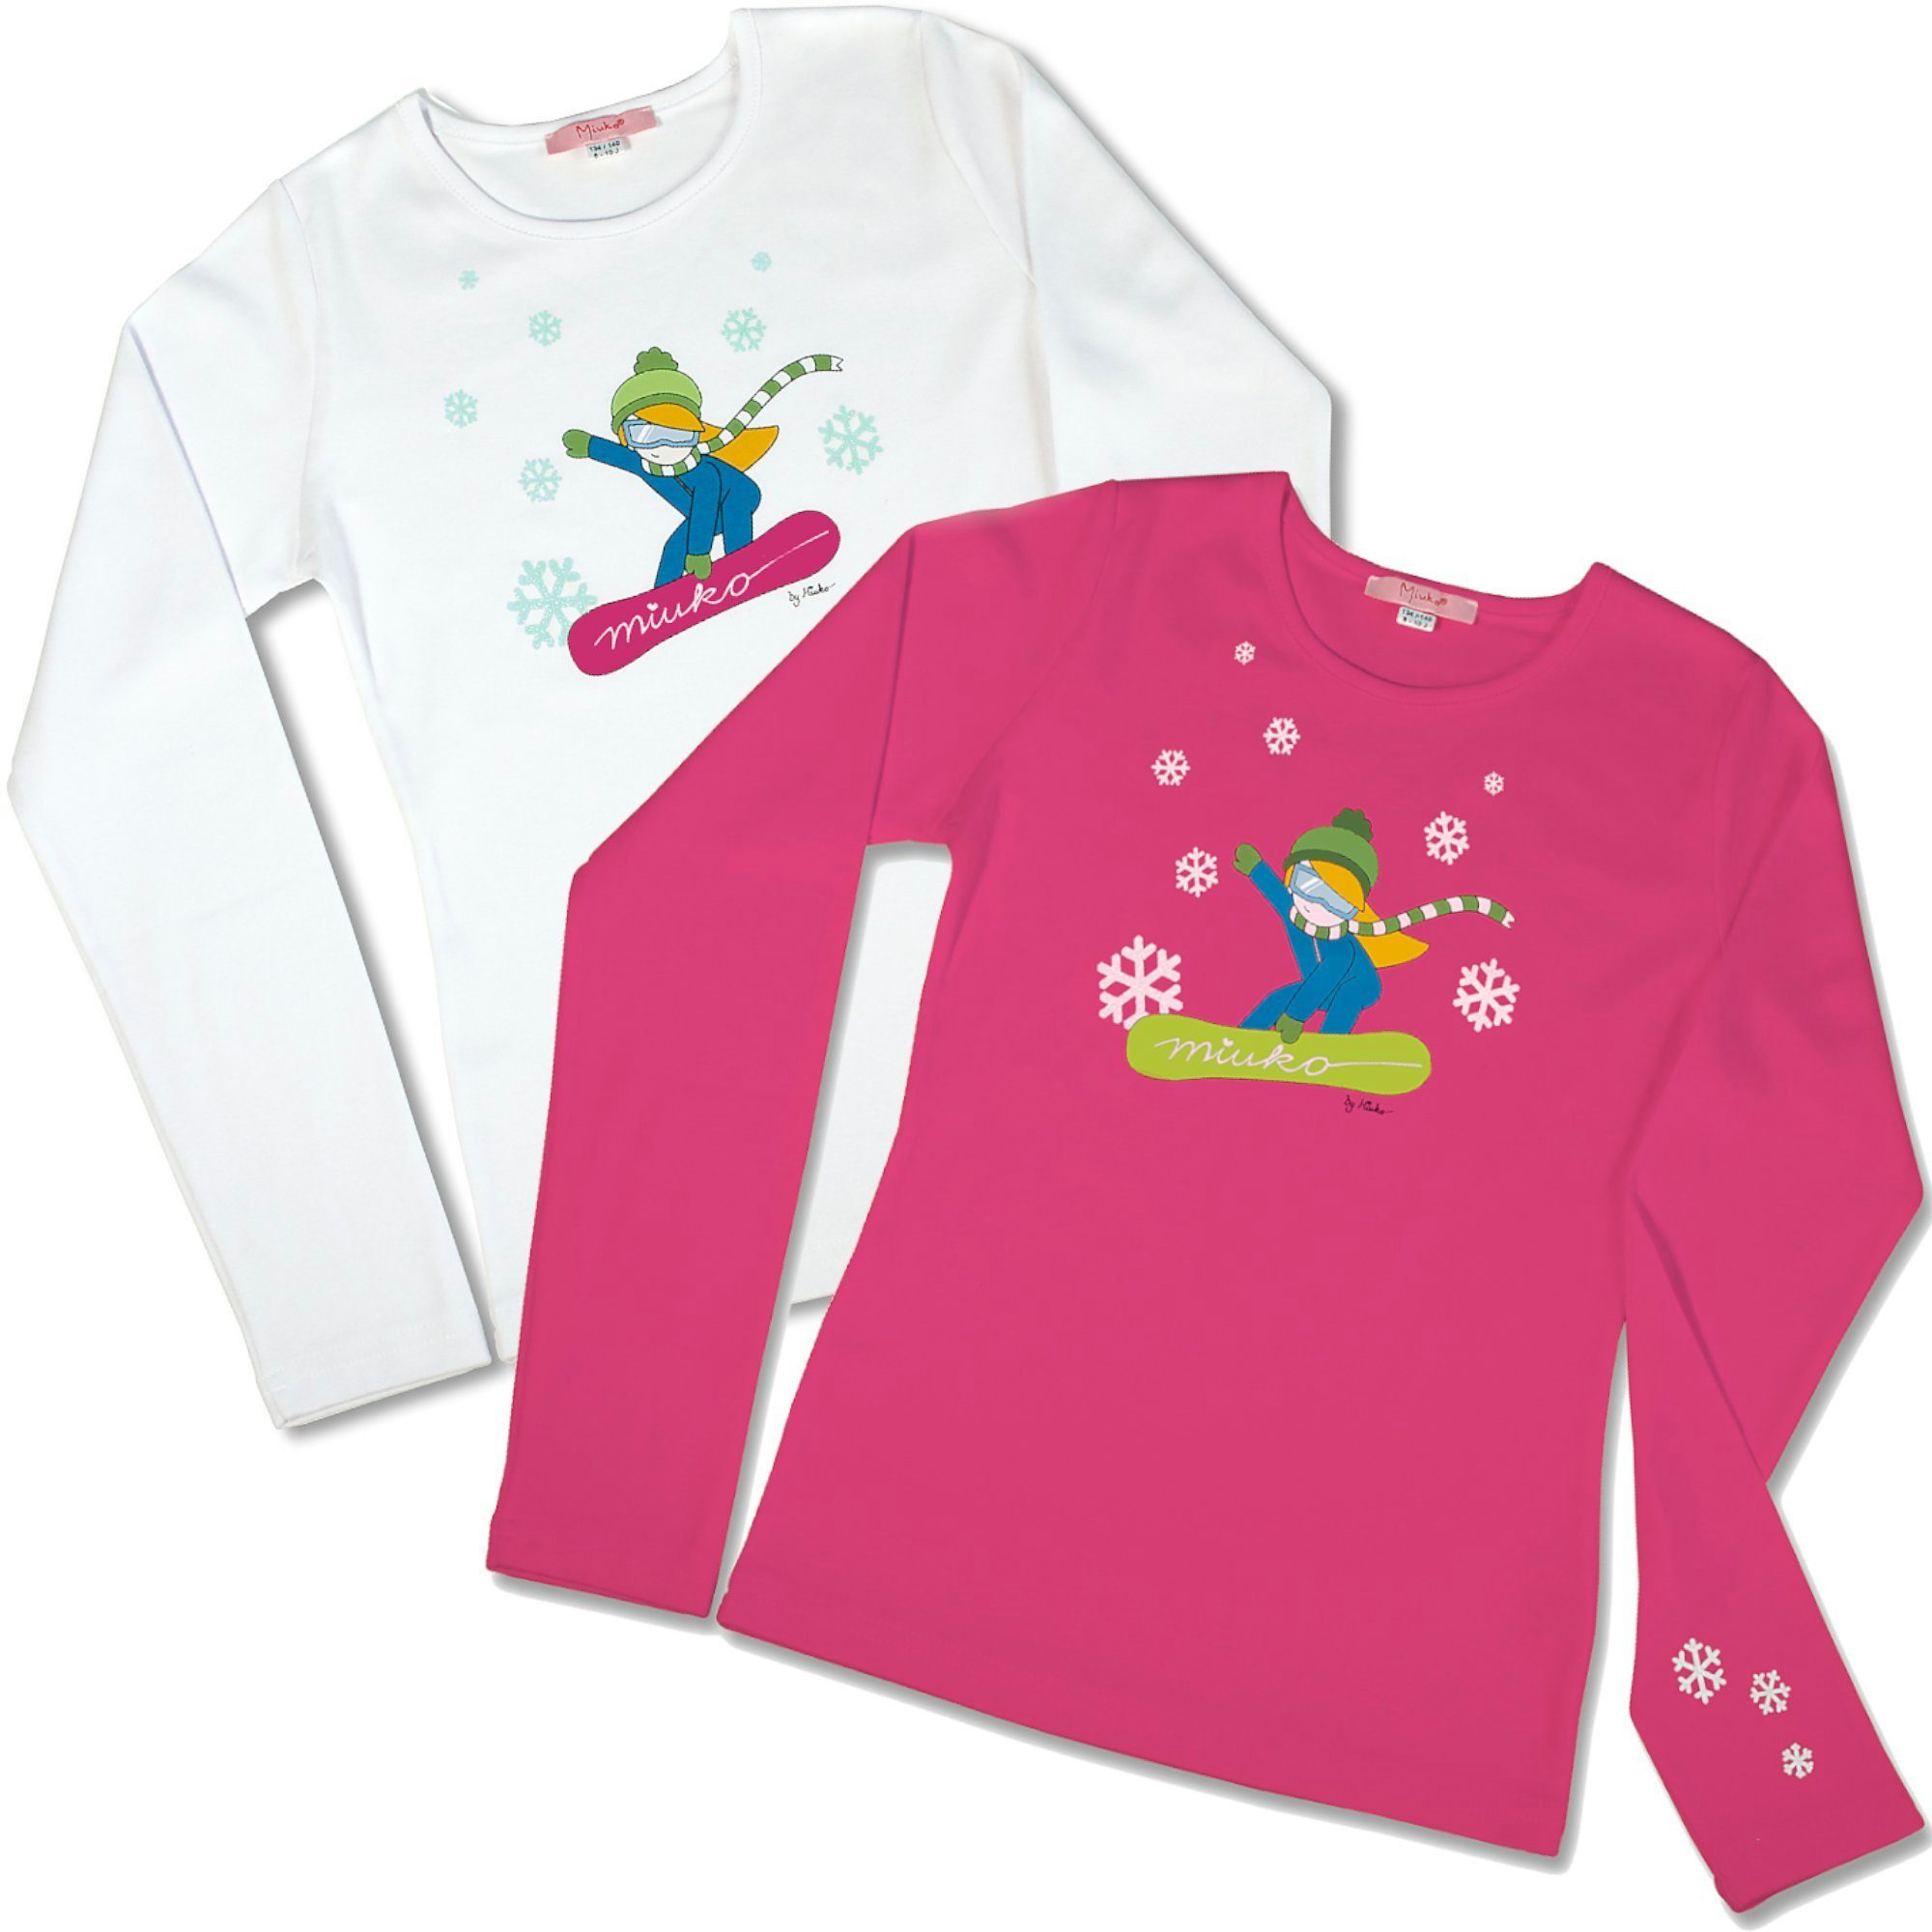 Miuko Langarmshirt für Mädchen weiß oder pink, T-Shirt langärmlig, Motiv Snowboarderin 100% Baumwolle 122 128 134 140 146 152 158 164 rosa